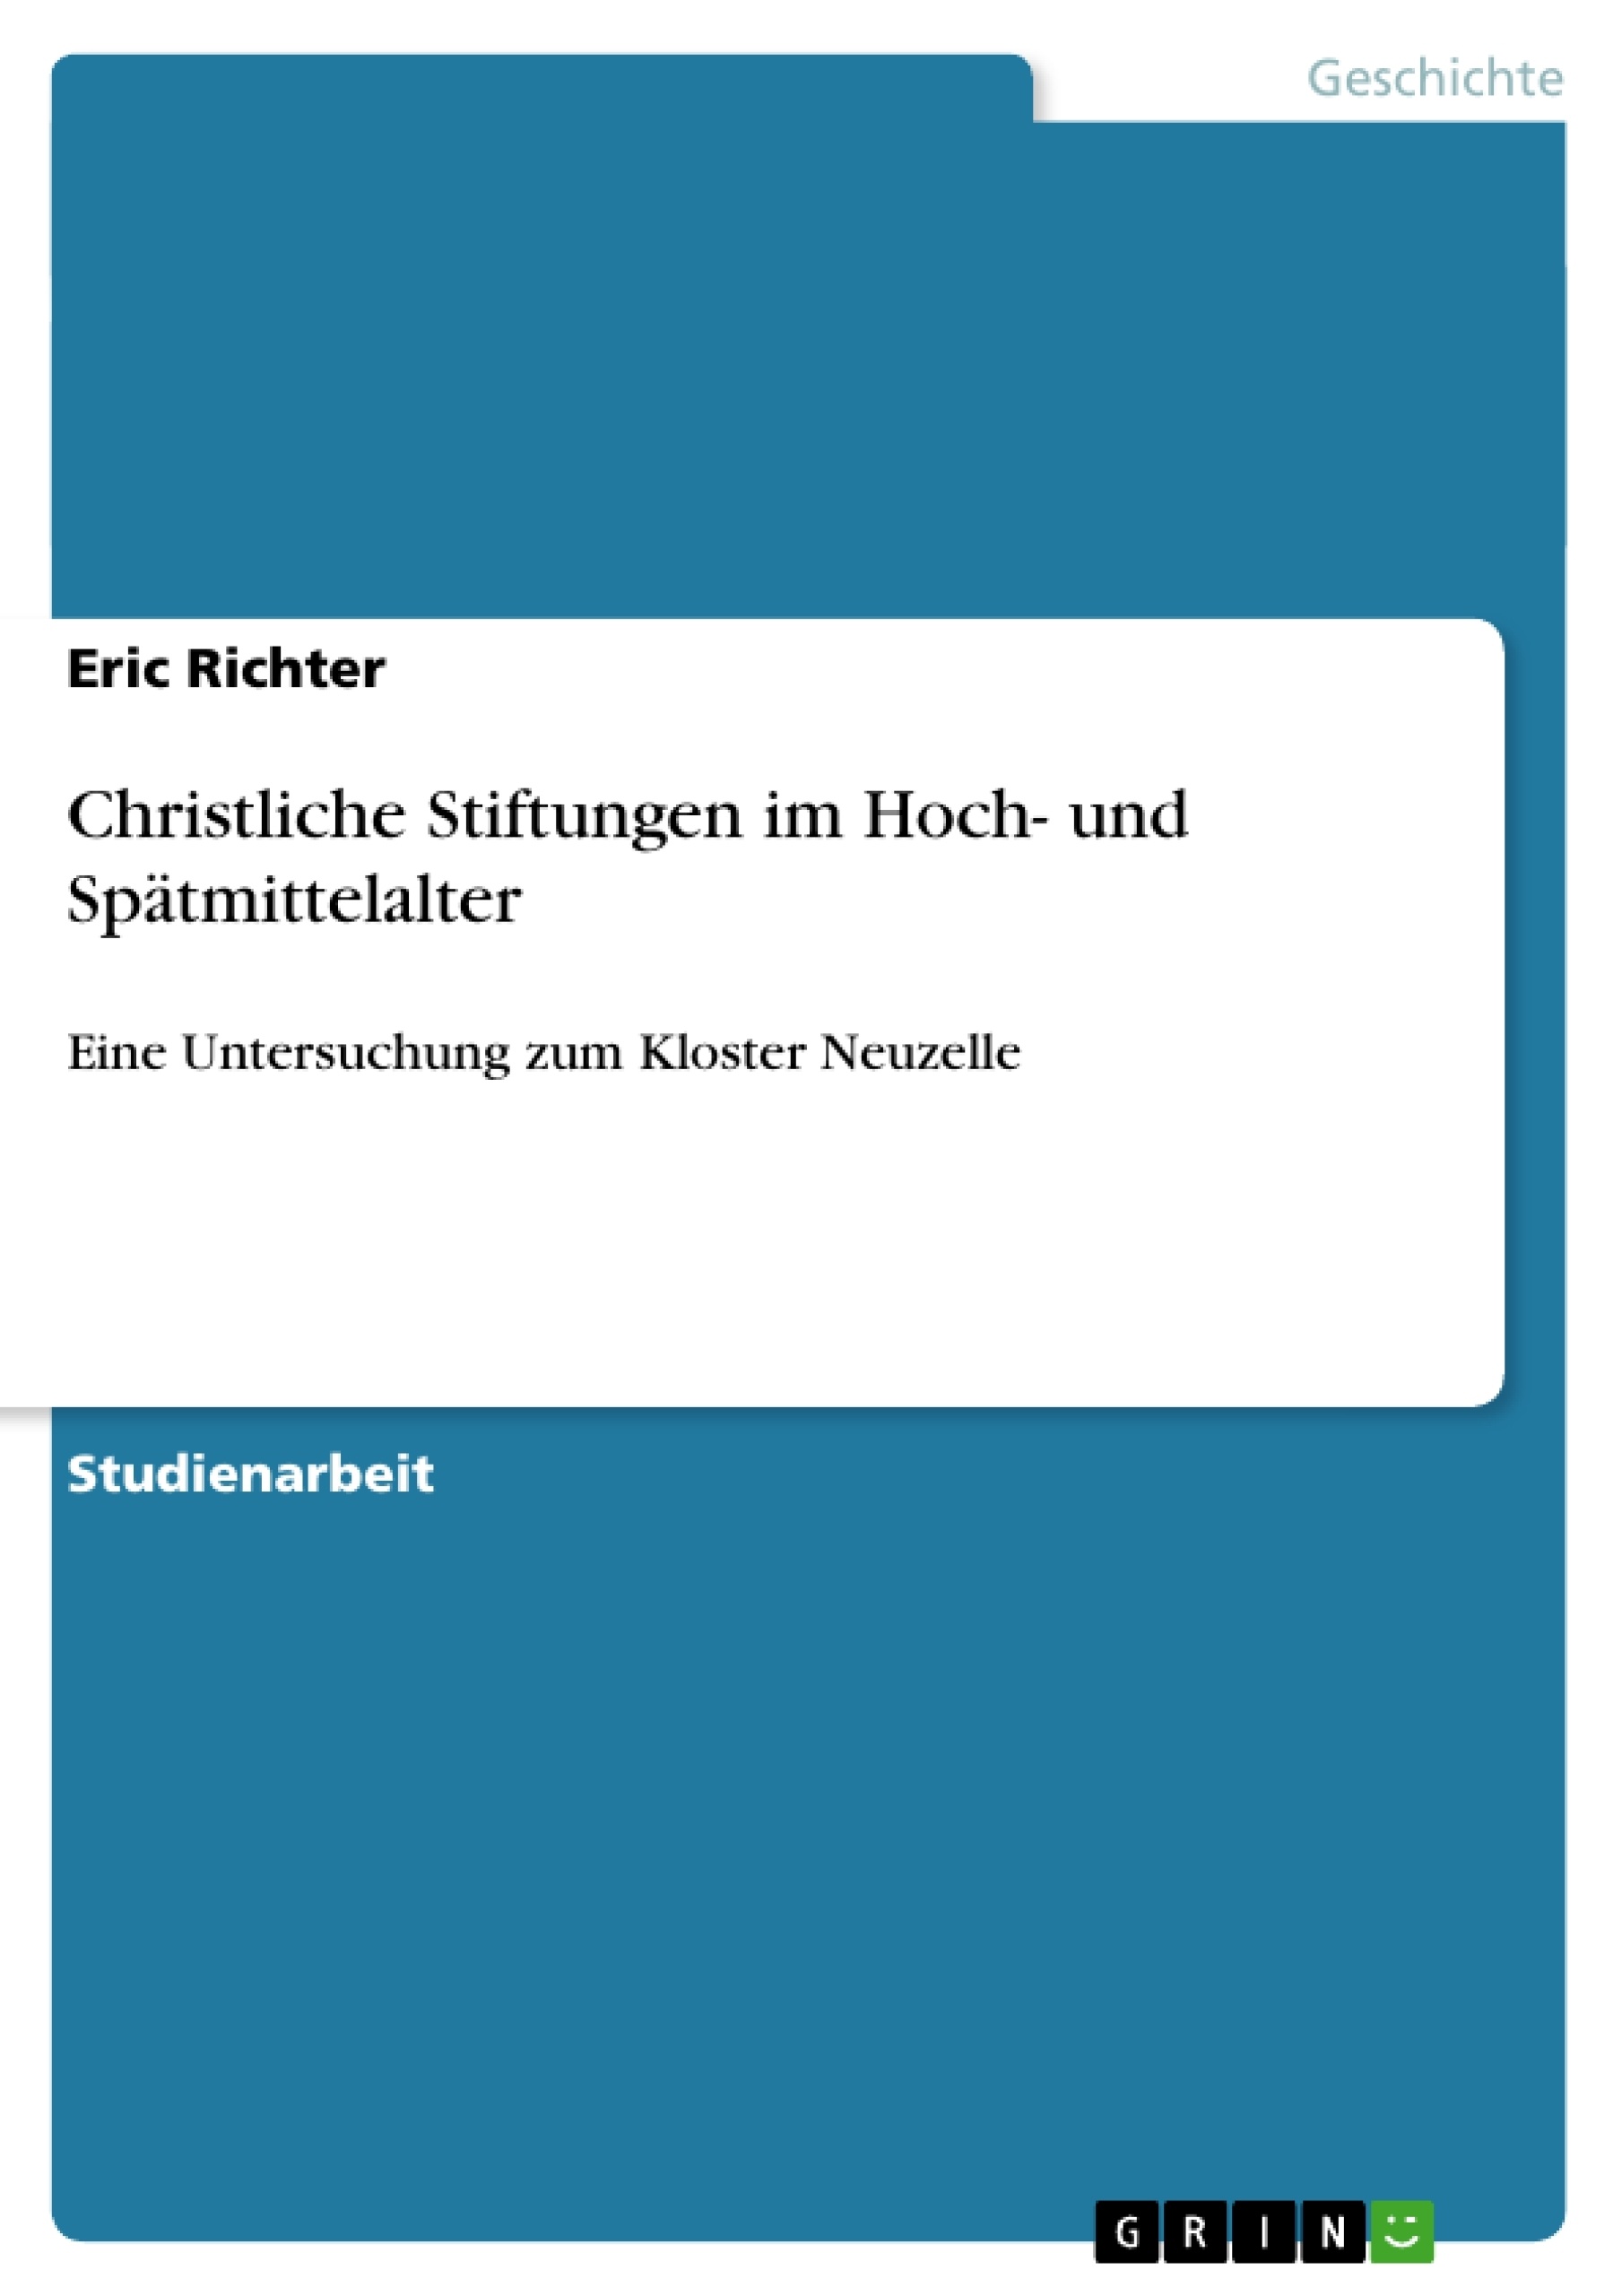 Título: Christliche Stiftungen im Hoch- und Spätmittelalter